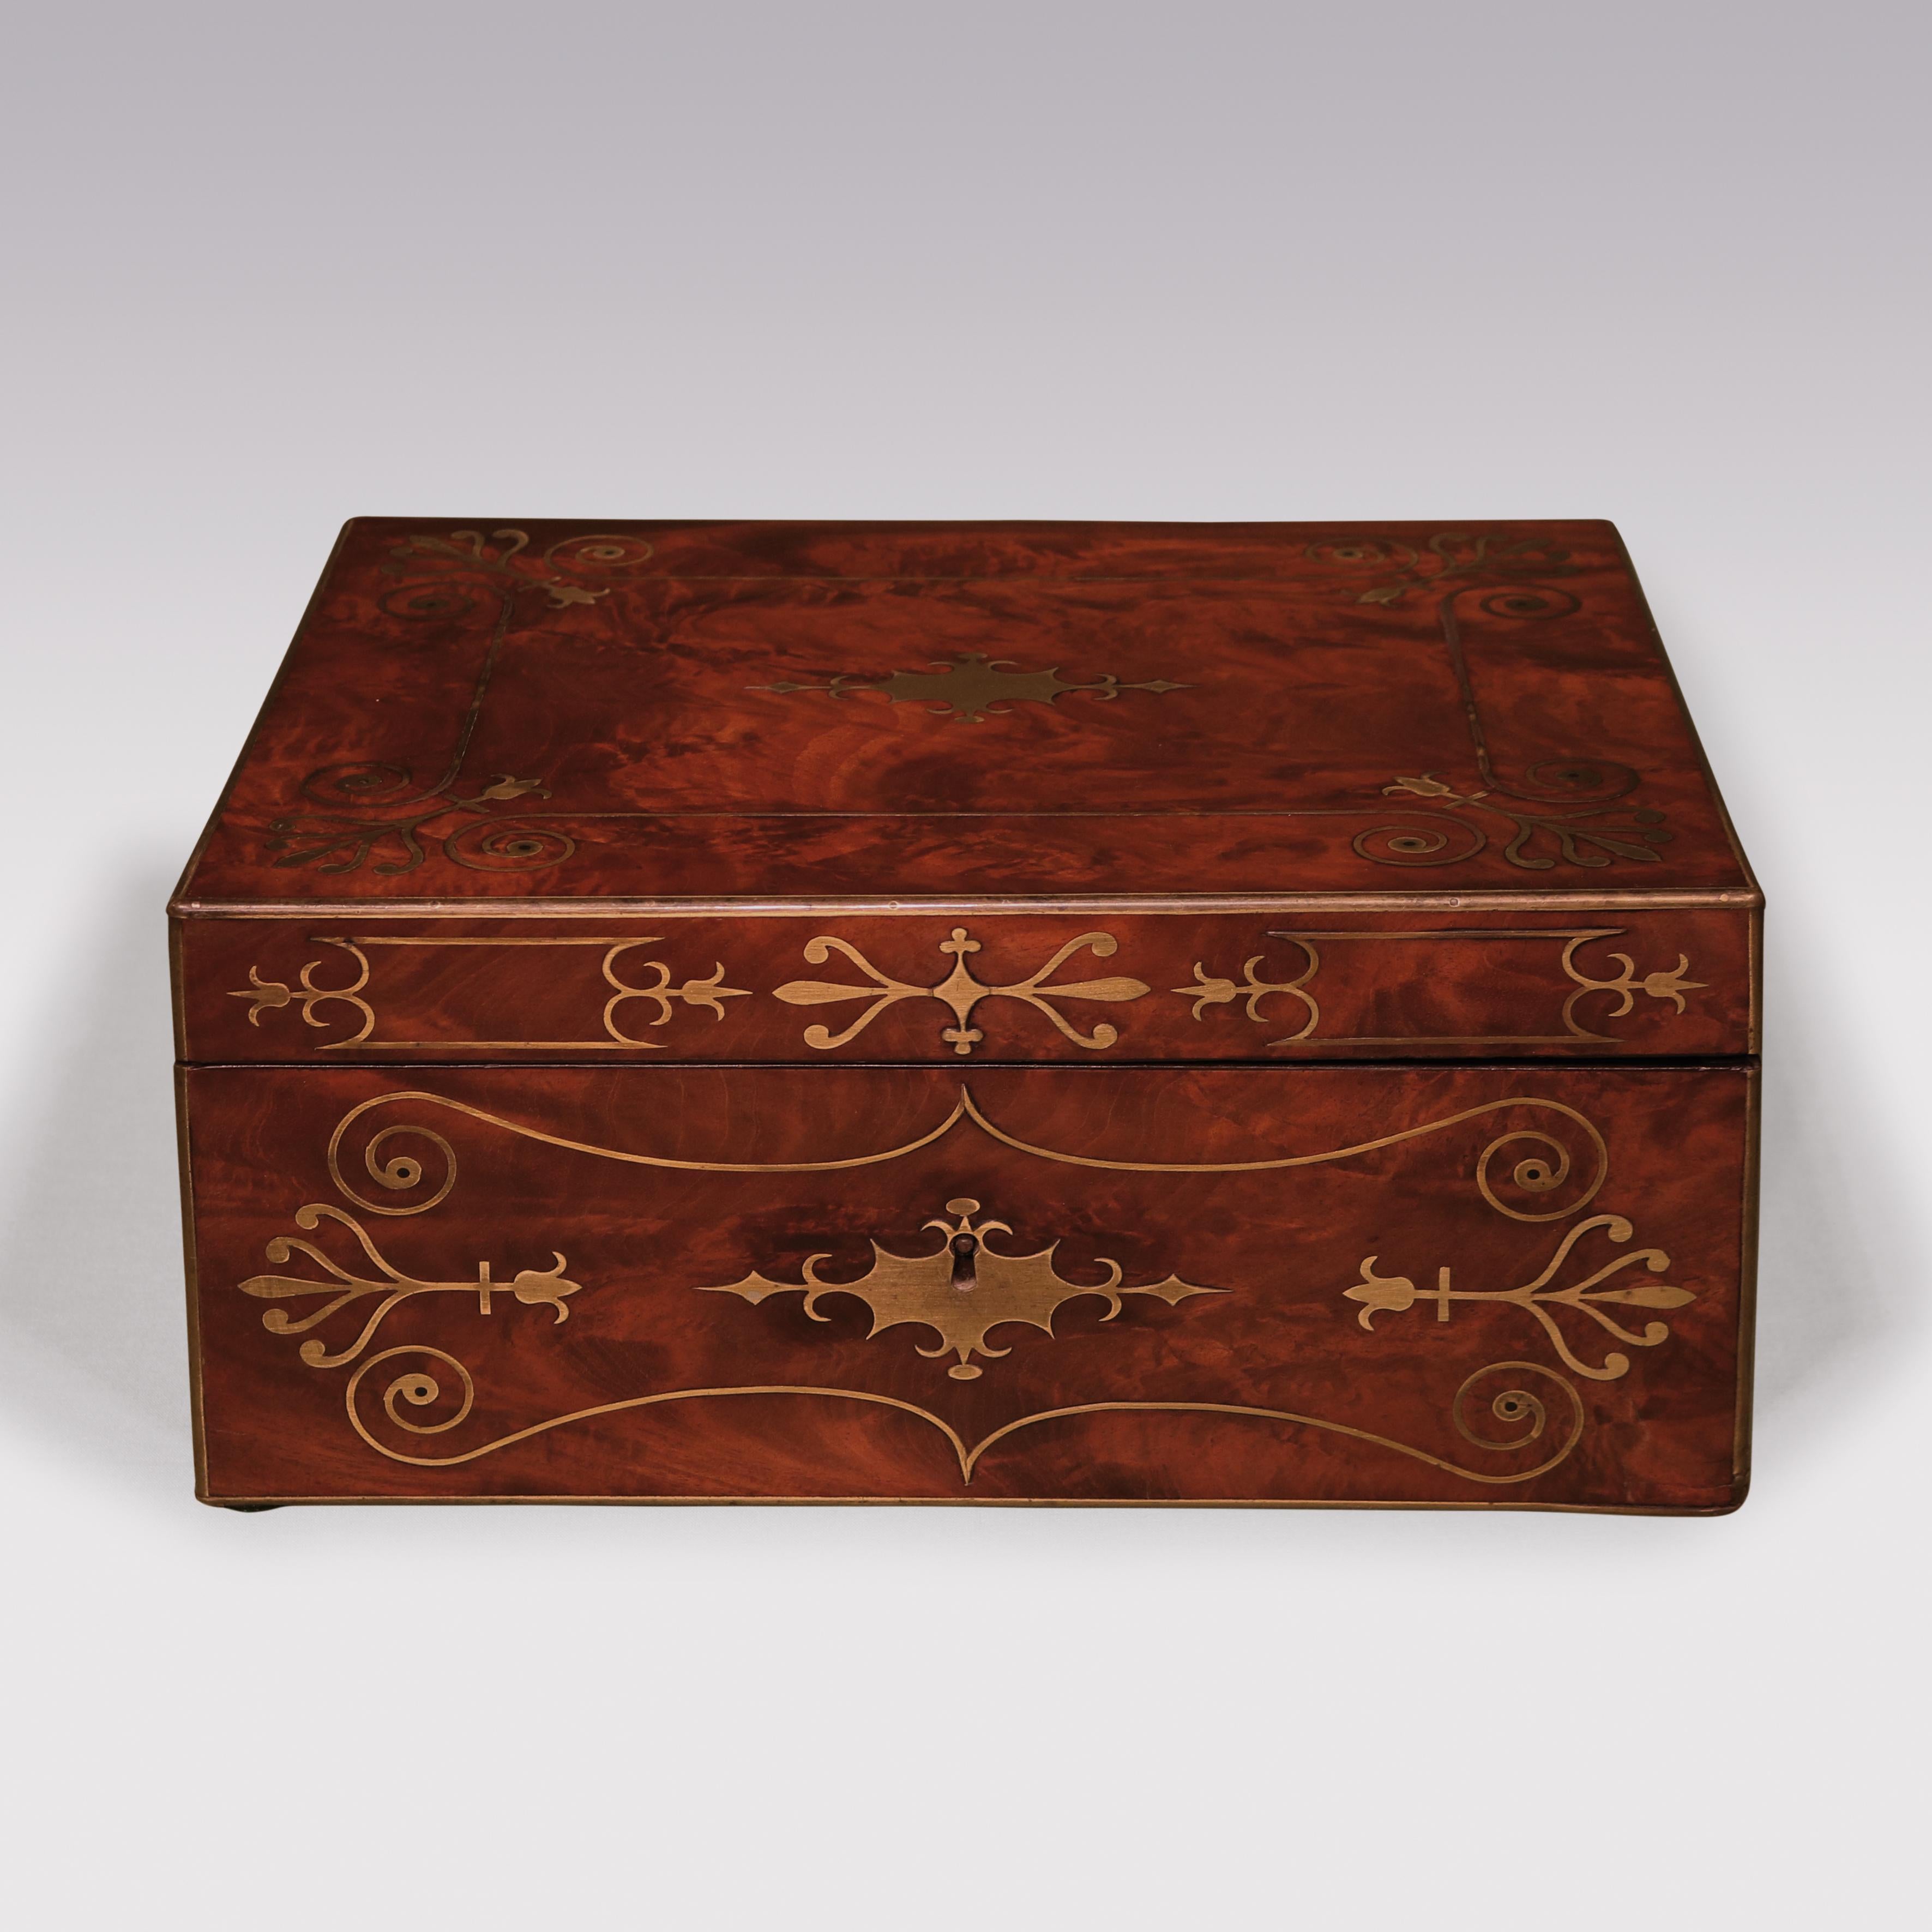 English Early 19th Century Regency Period Mahogany Stationary Box